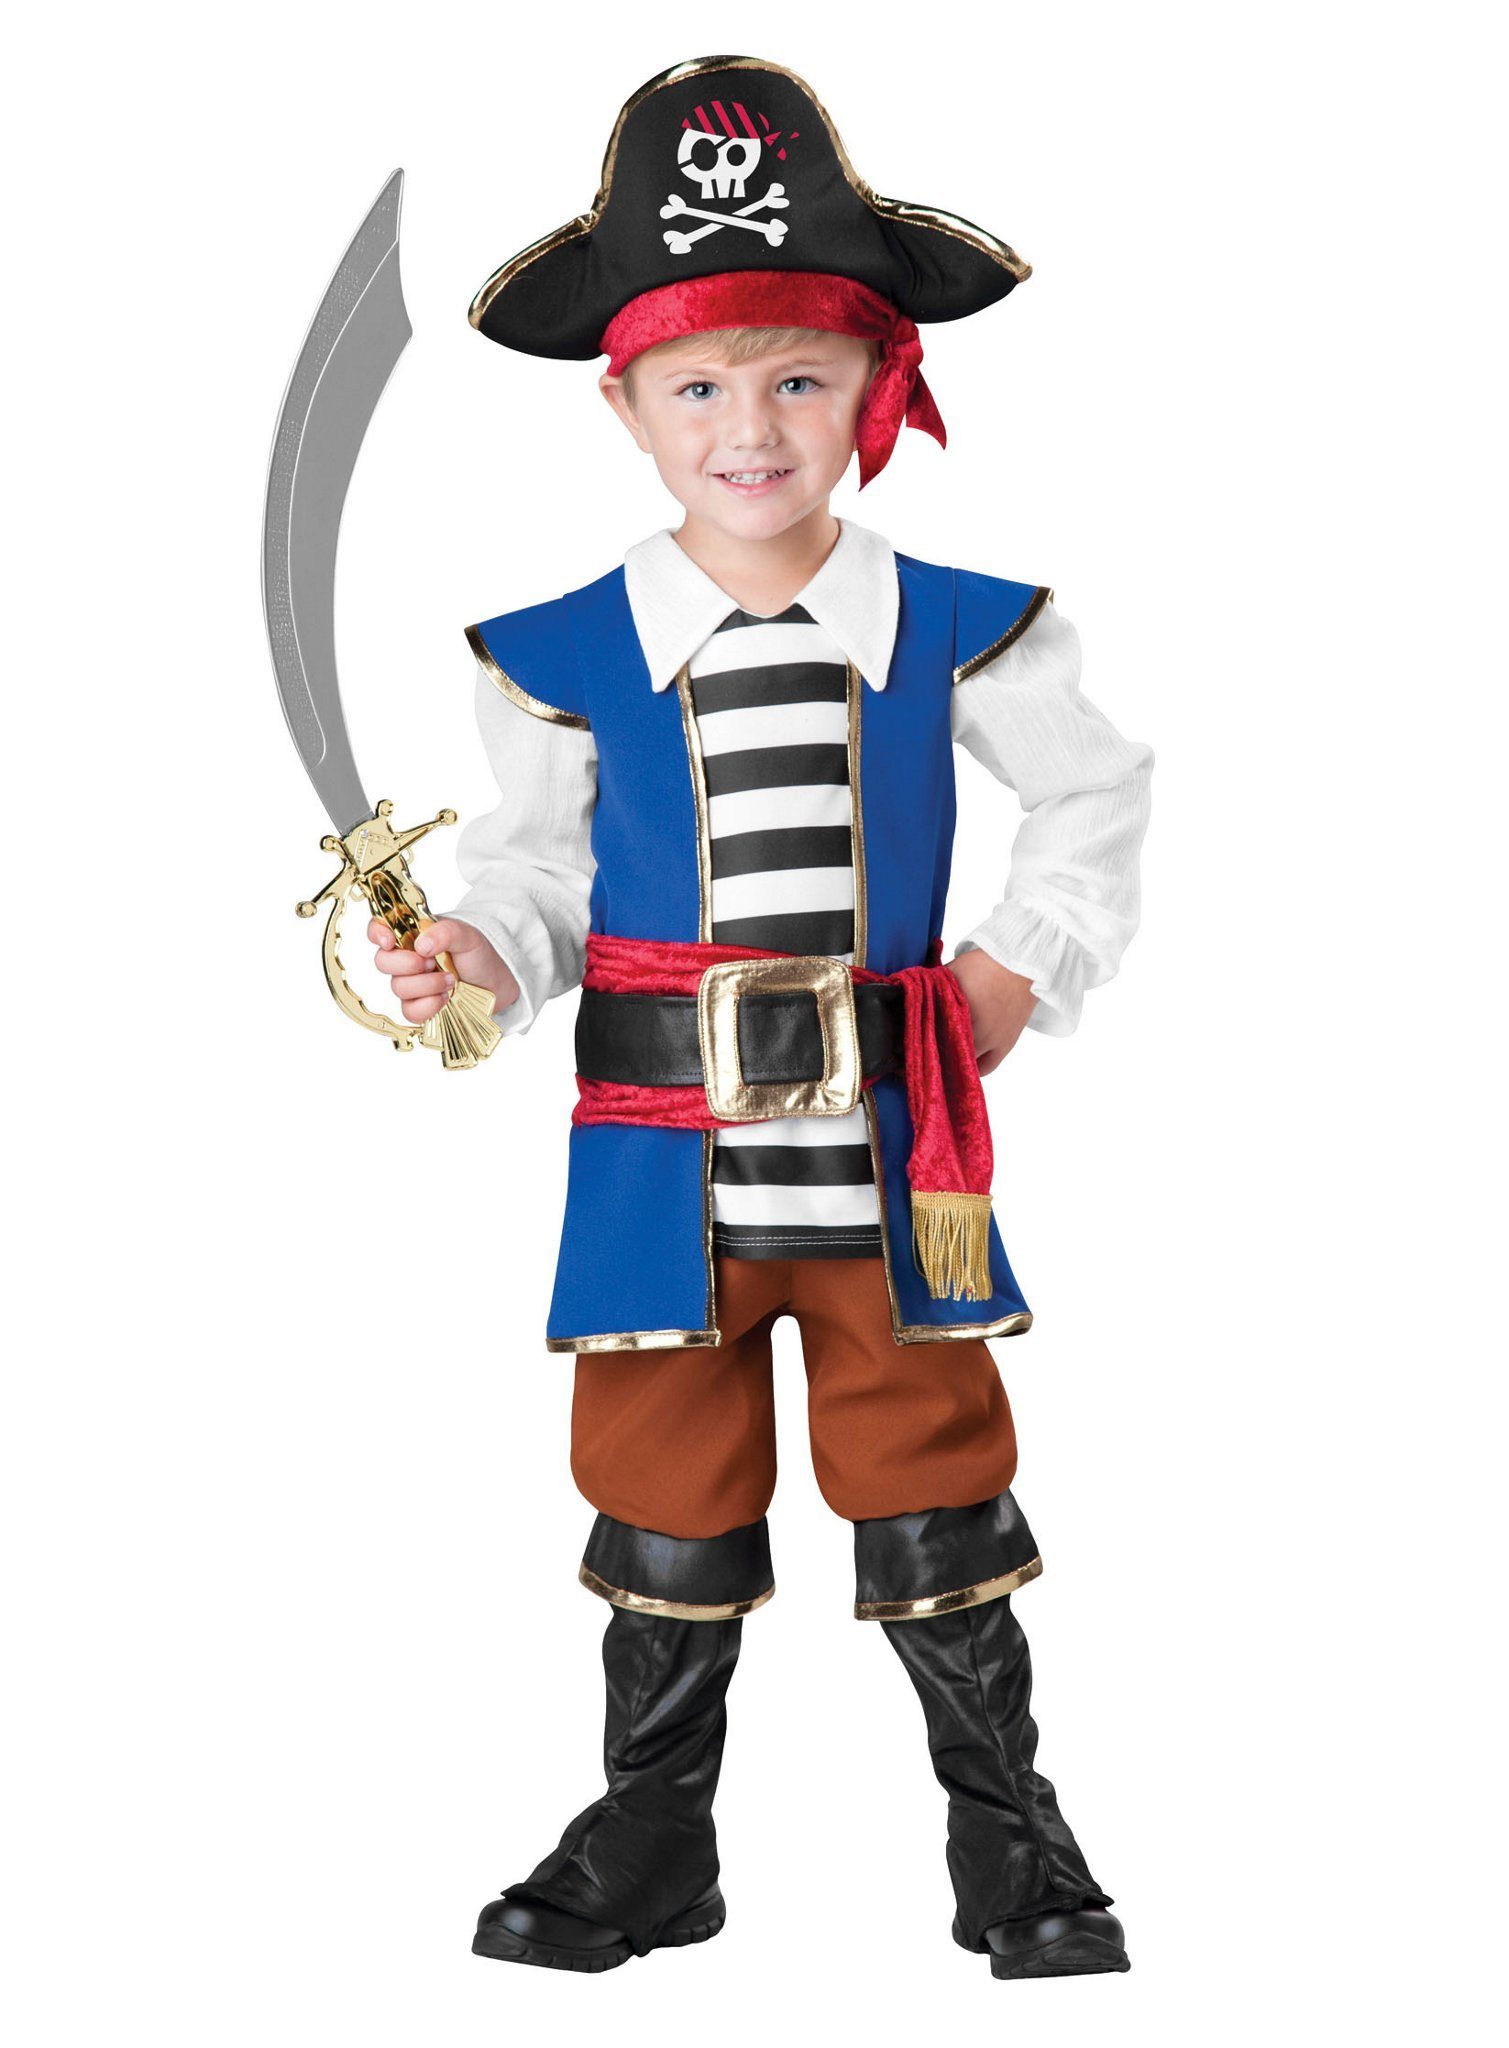 In Character Kostüm Freibeuter Piratenkostüm, Tolles Piratenkostüm für kleine Piraten